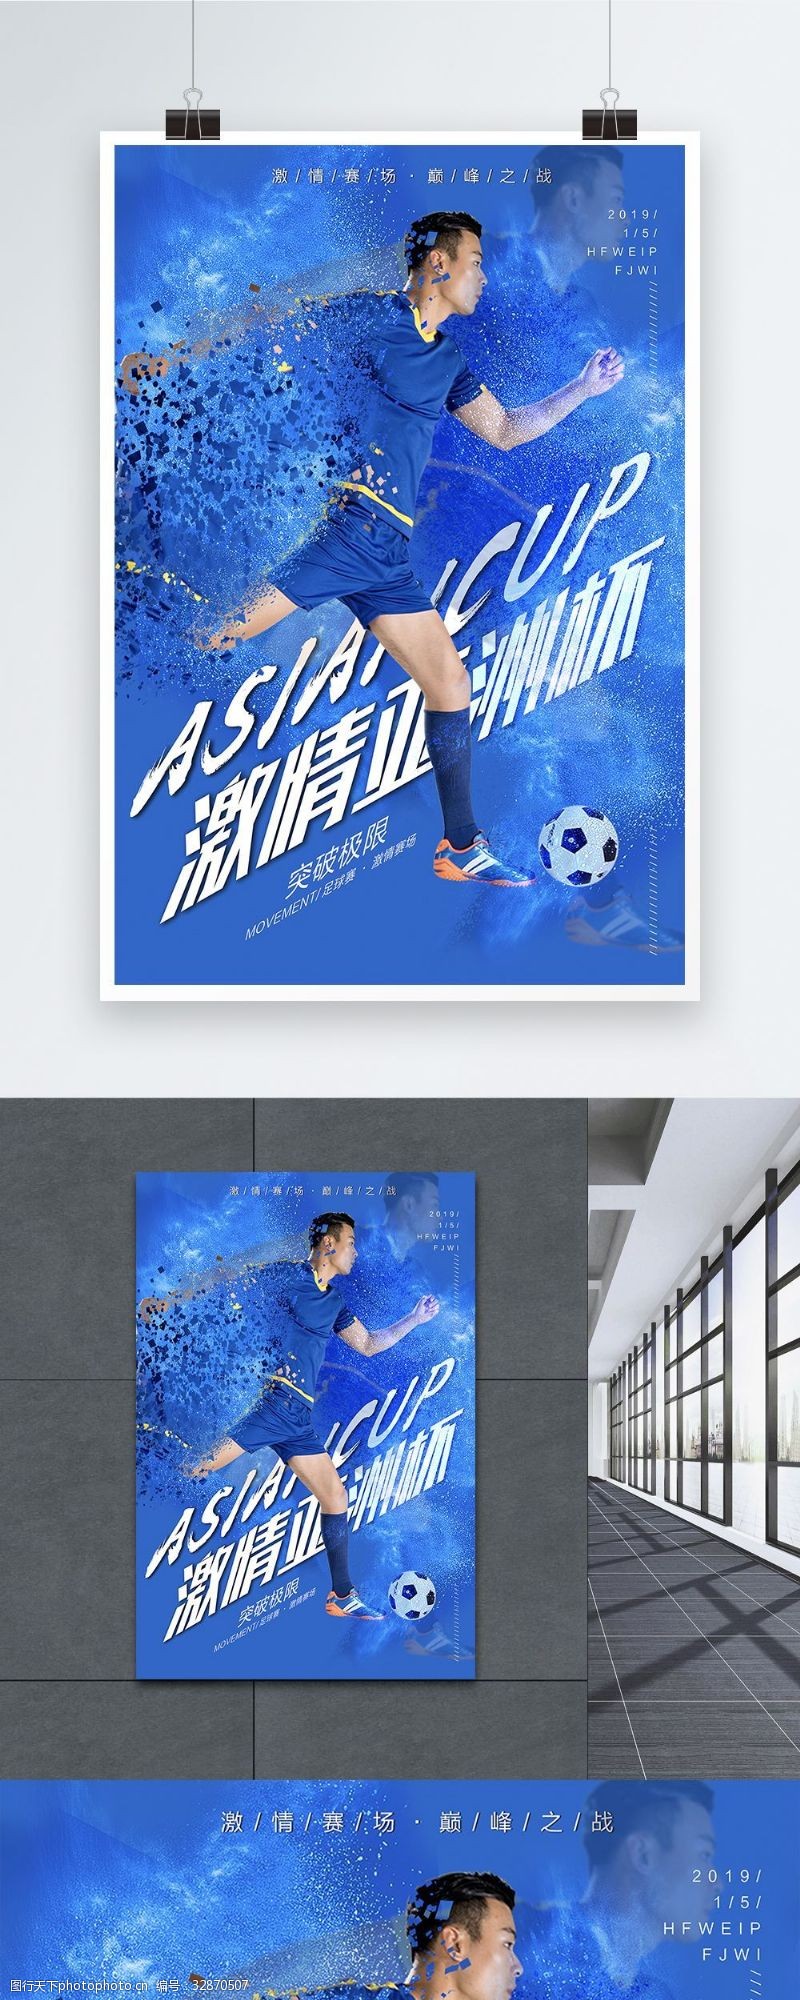 激情亚洲2019年亚洲杯足球赛宣传海报